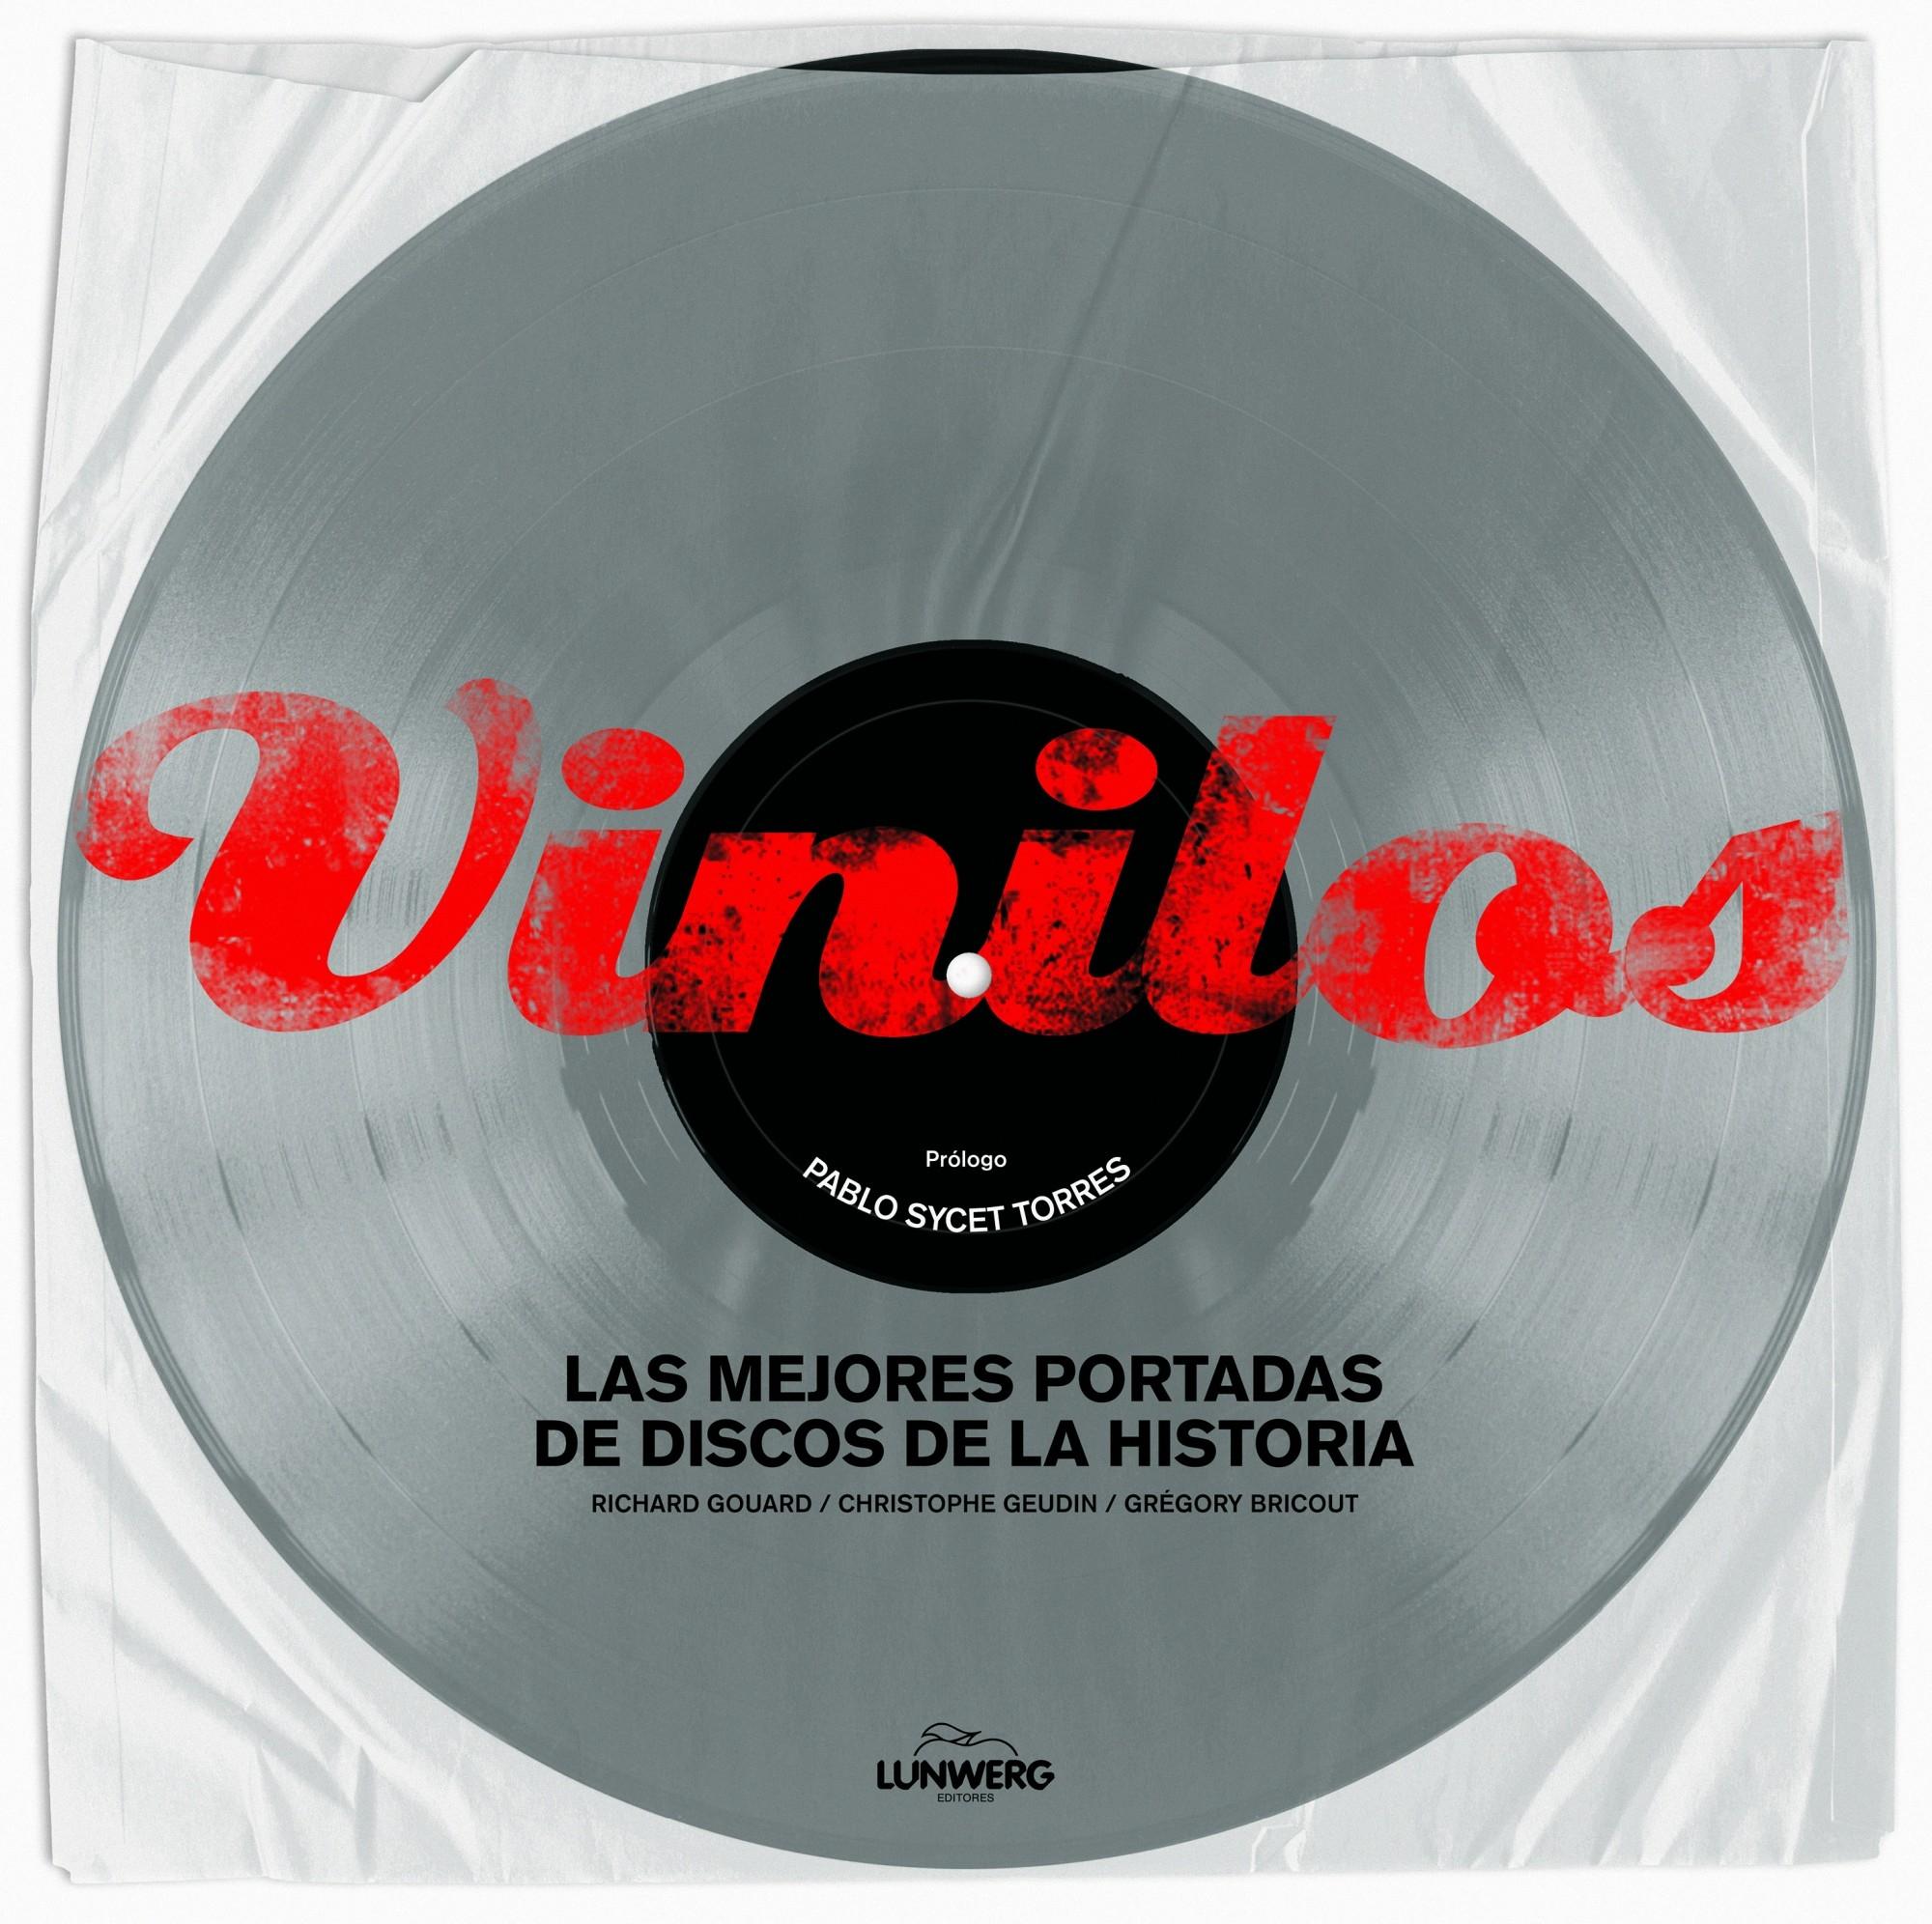 Vinilos "Las mejores portadas de discos de la historia". 